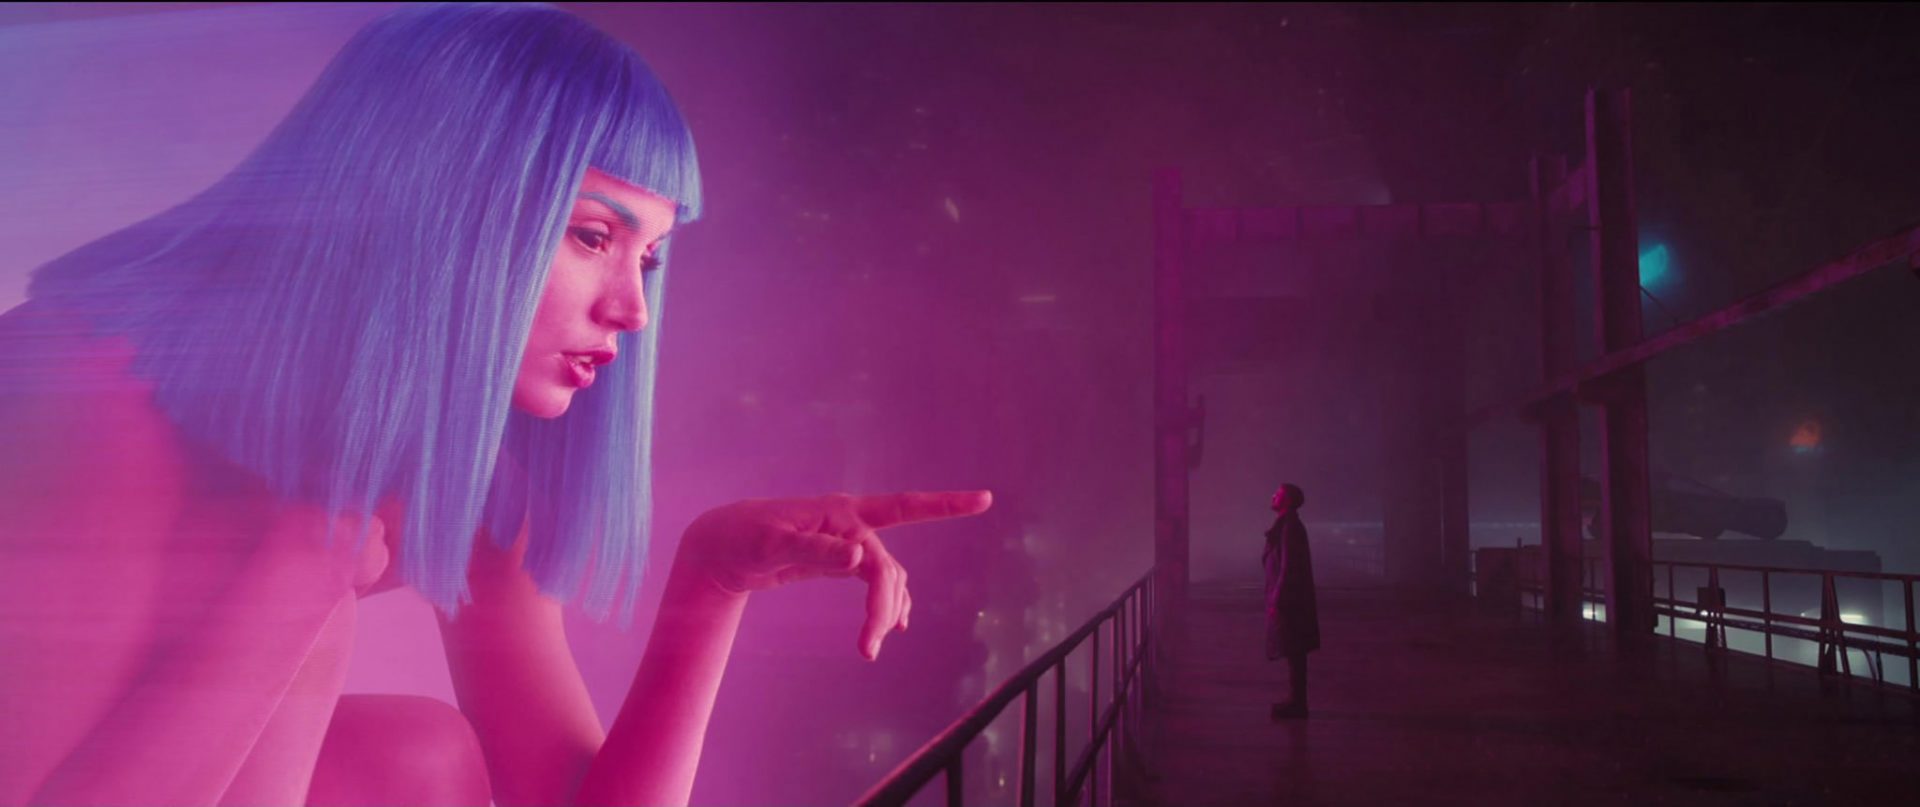 El Arte de Blade Runner 2049 - Concept Art, Making Of y Breakdown -ilustración-Visual development